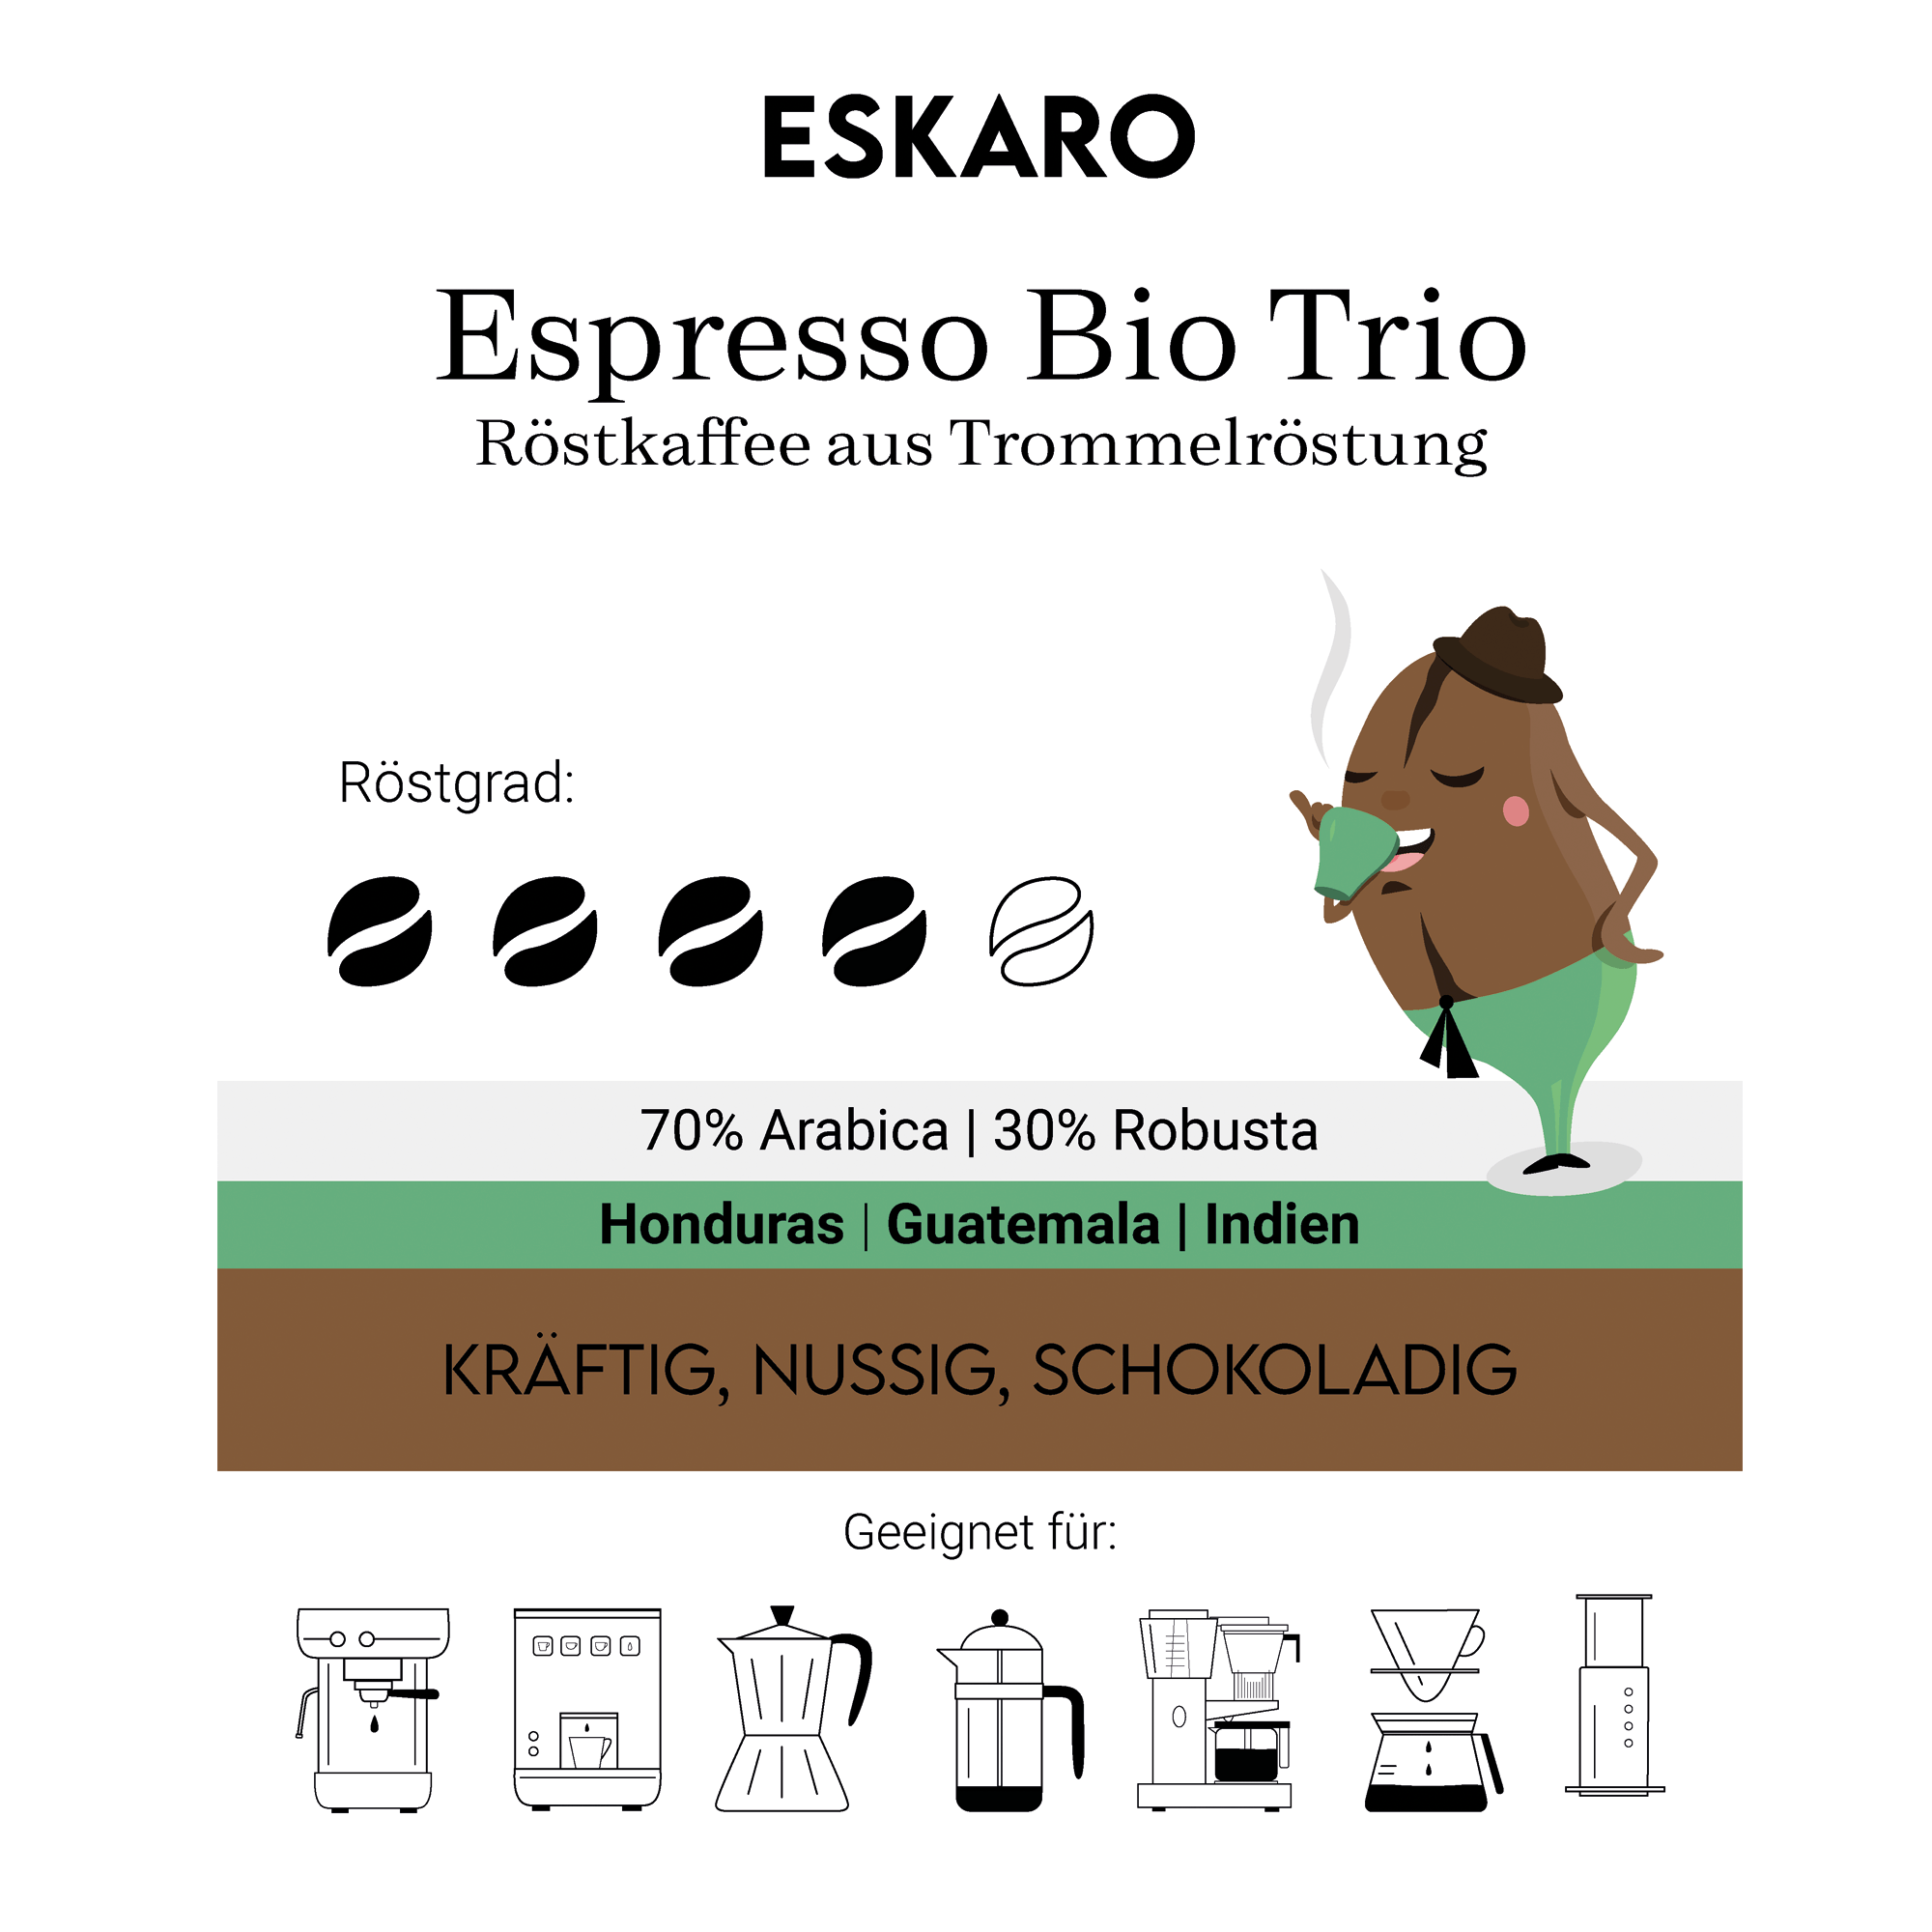 Eskaro Espresso Bio Trio - Eskaro - Esser Kaffeerösterei und Handelsgesellschaft mbH